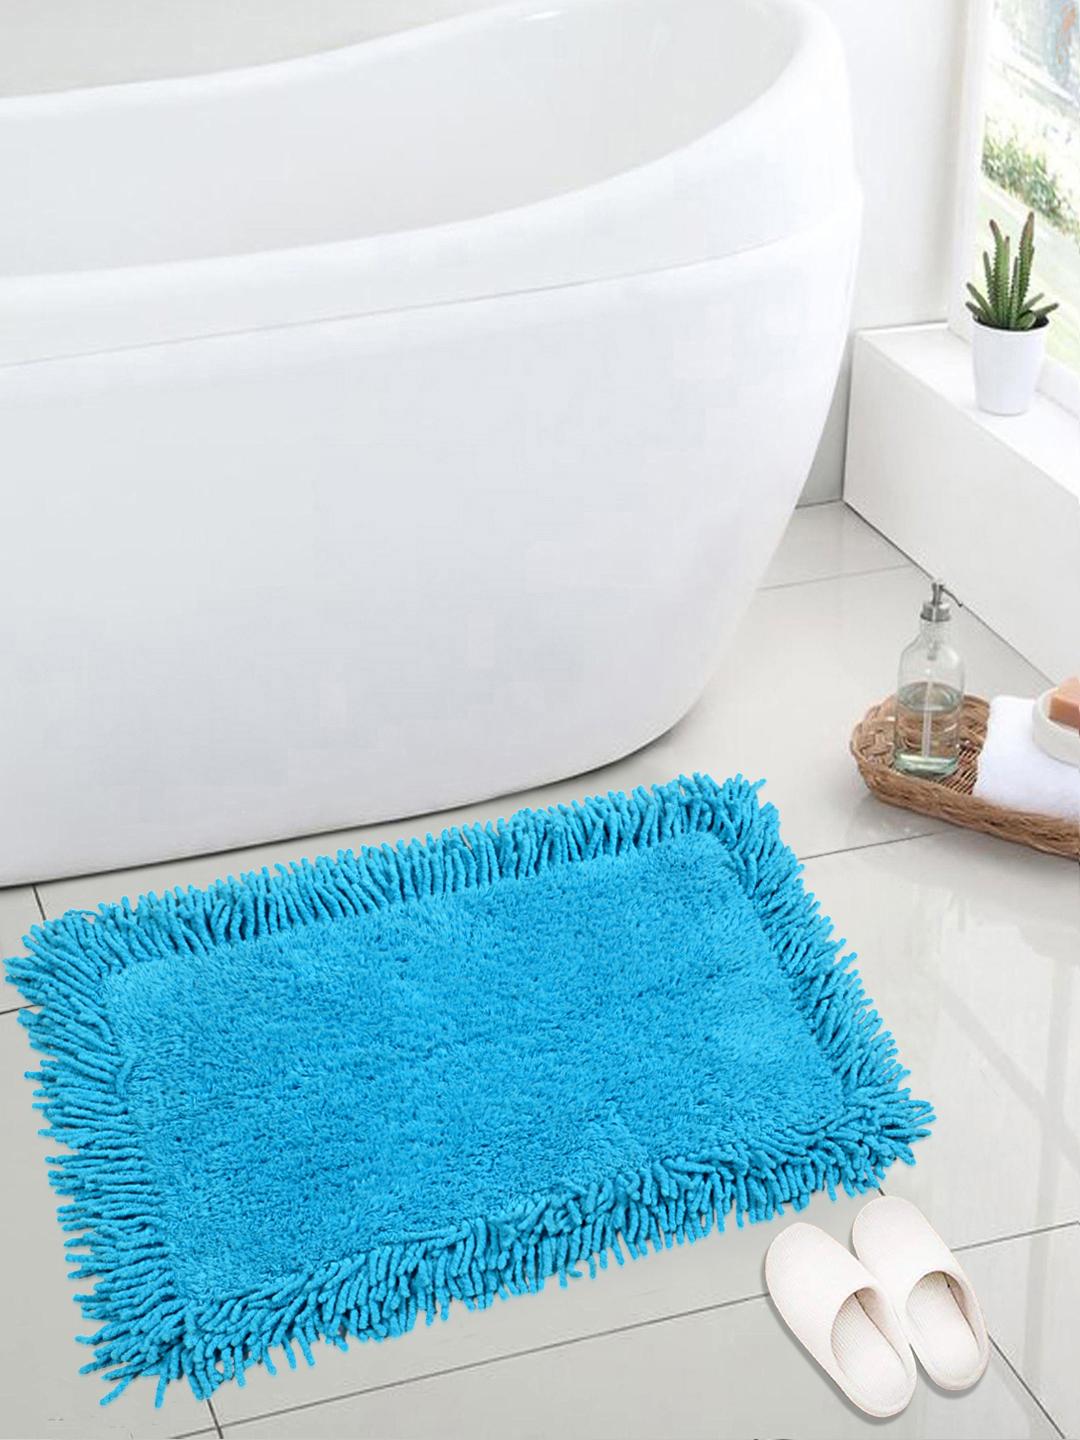 Turquoise, 40x60cm Details about   Soft Cotton Anti Slip Saggy Bathmat 